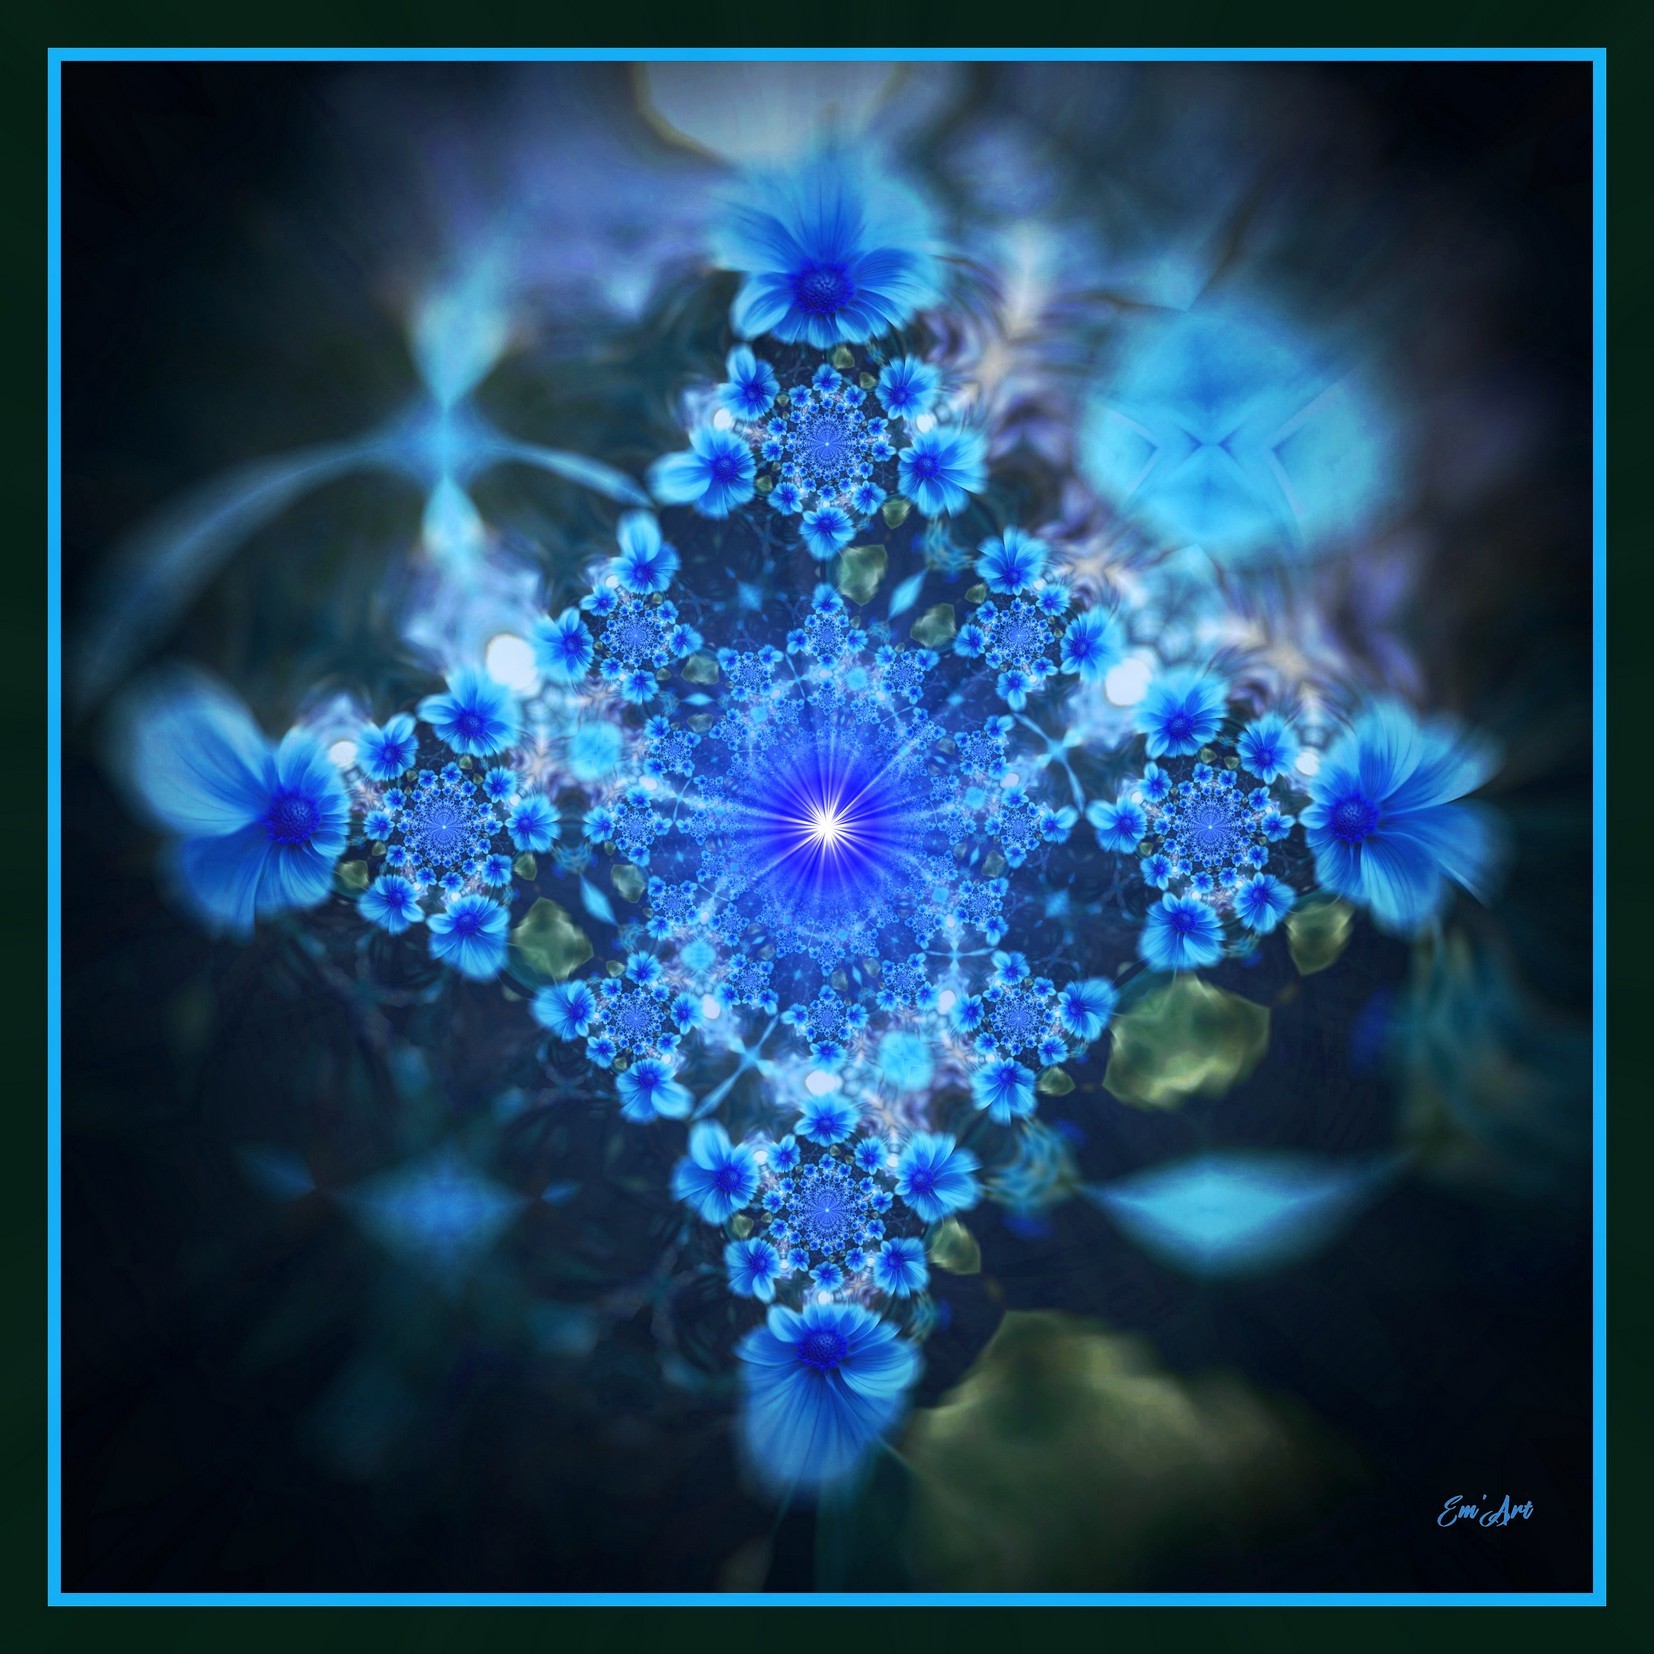 Bleuets Solaire, Photographie florale surréaliste par Emmanuelle Baudry